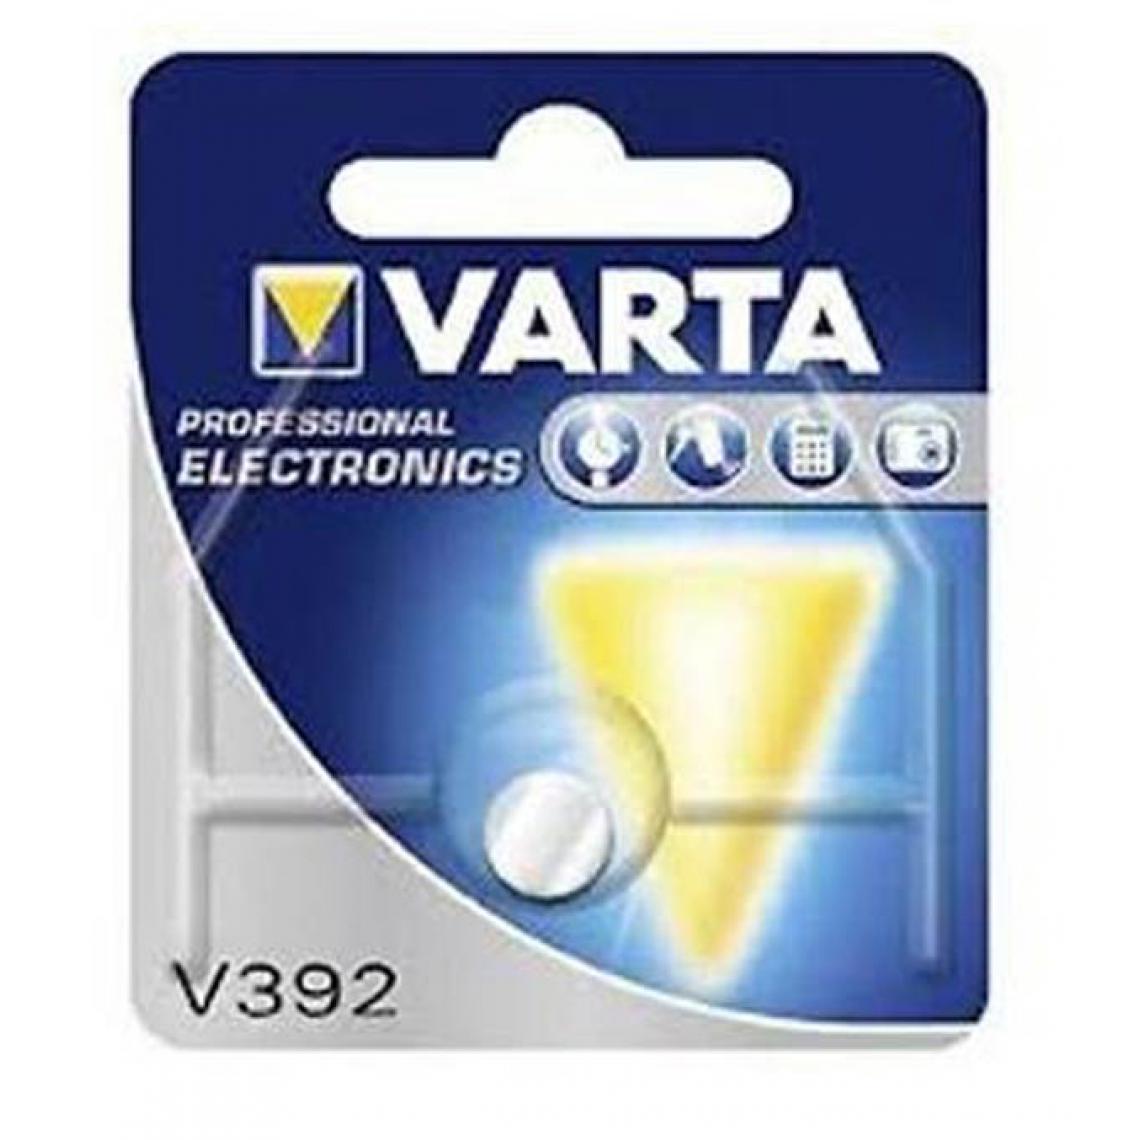 Varta - Pile bouton VARTA V 392 - Piles rechargeables